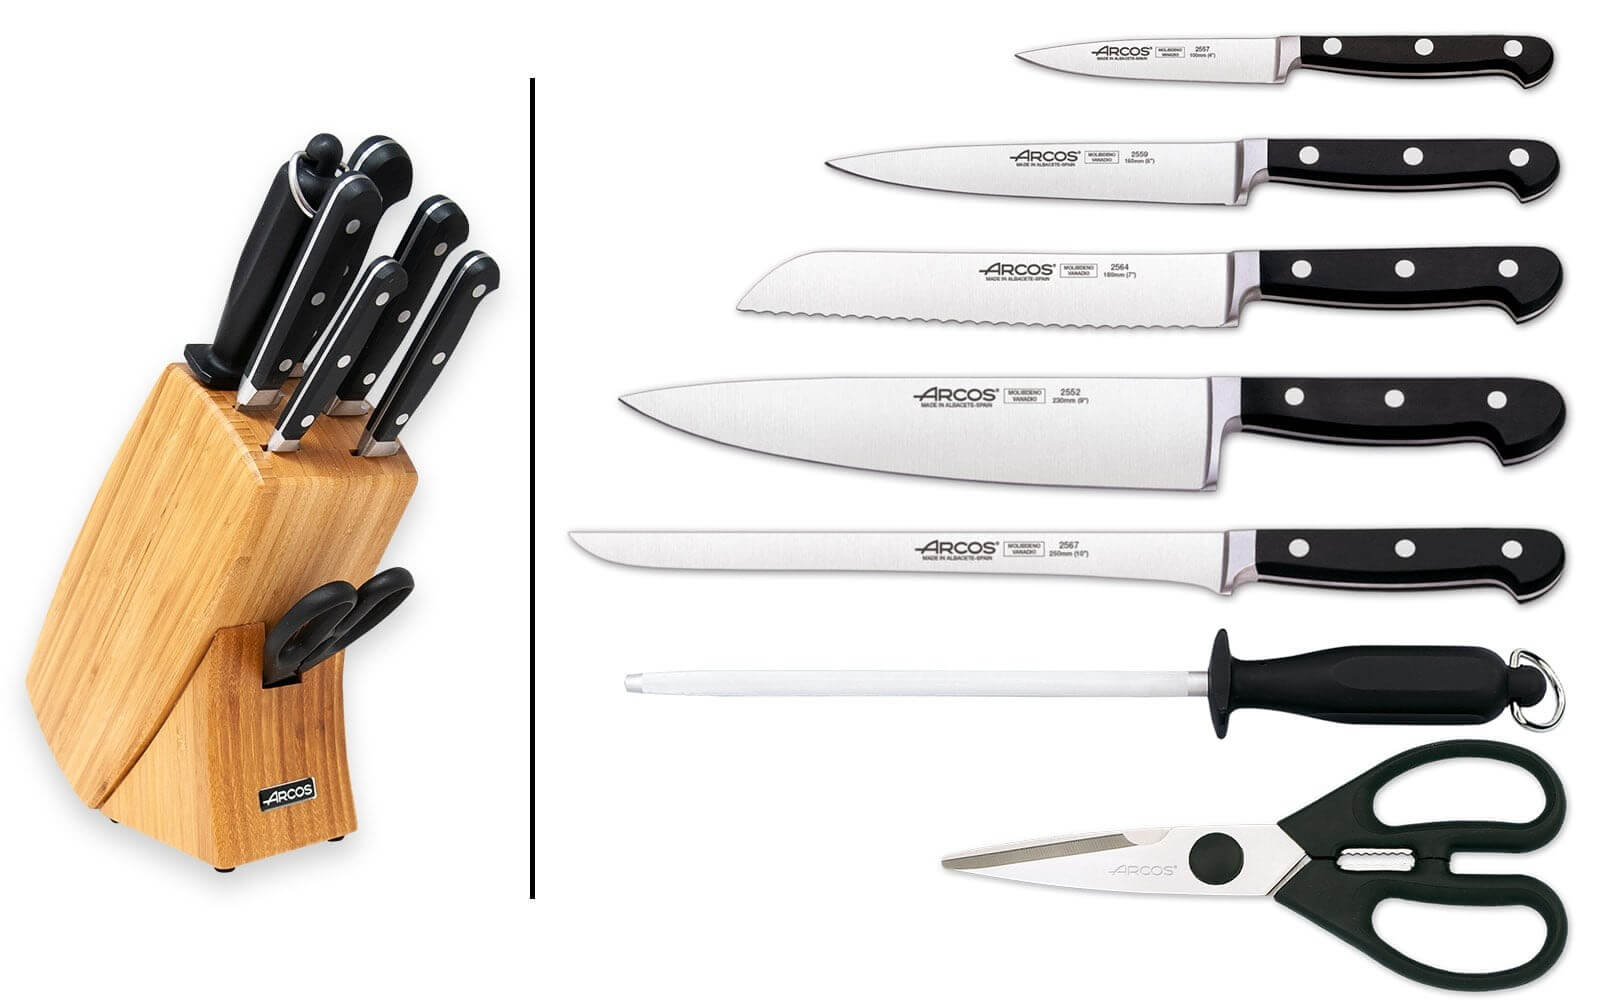 Range-couteaux en bois - Accessoires cuisines